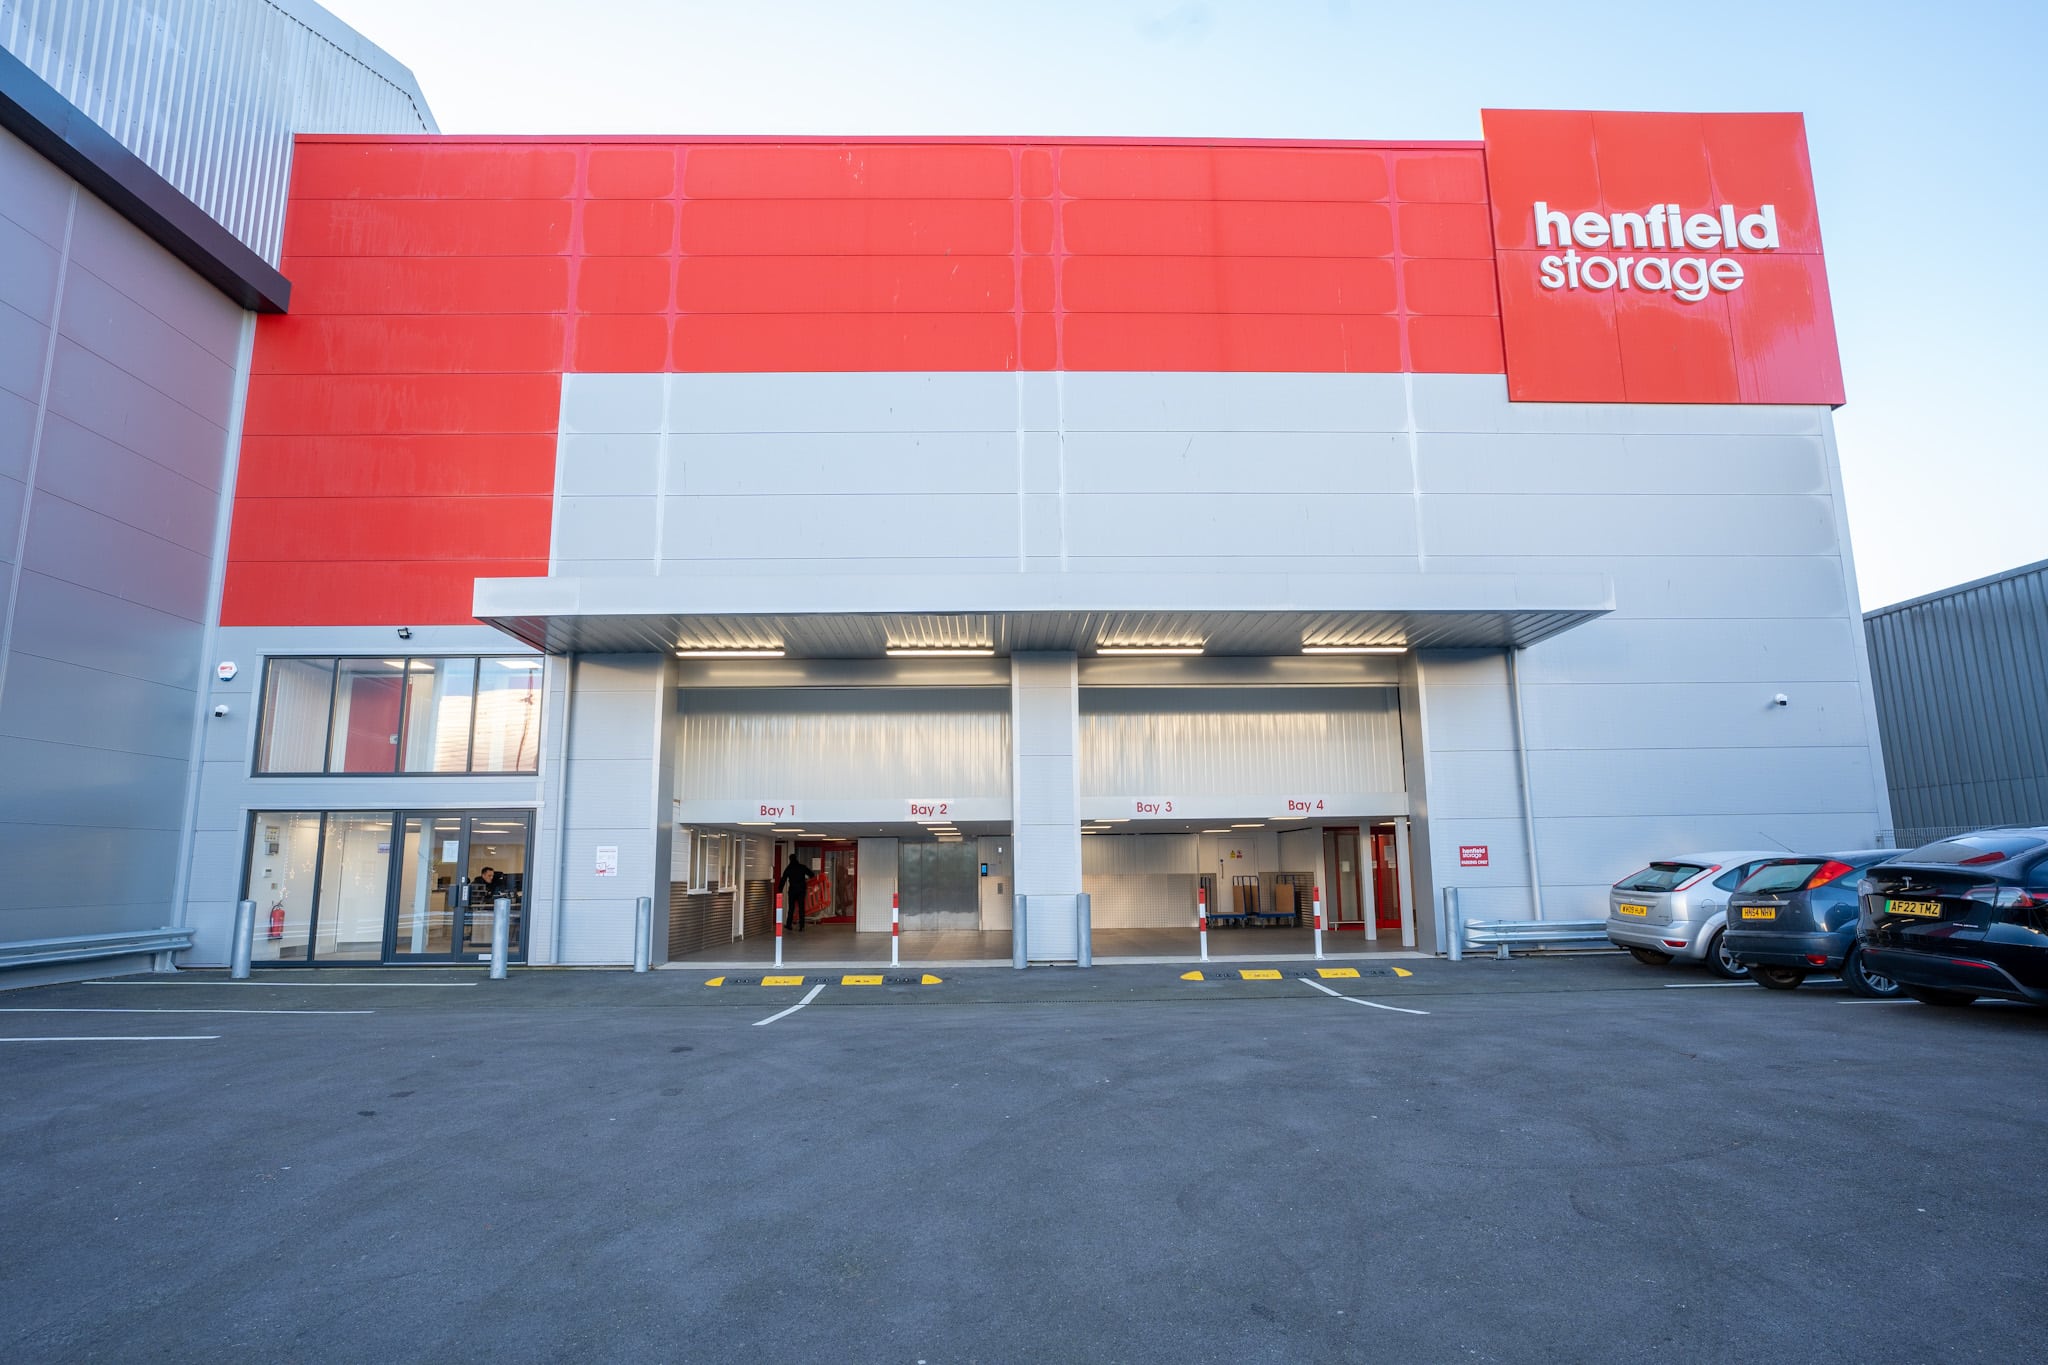 Henfield Storage in Brighton